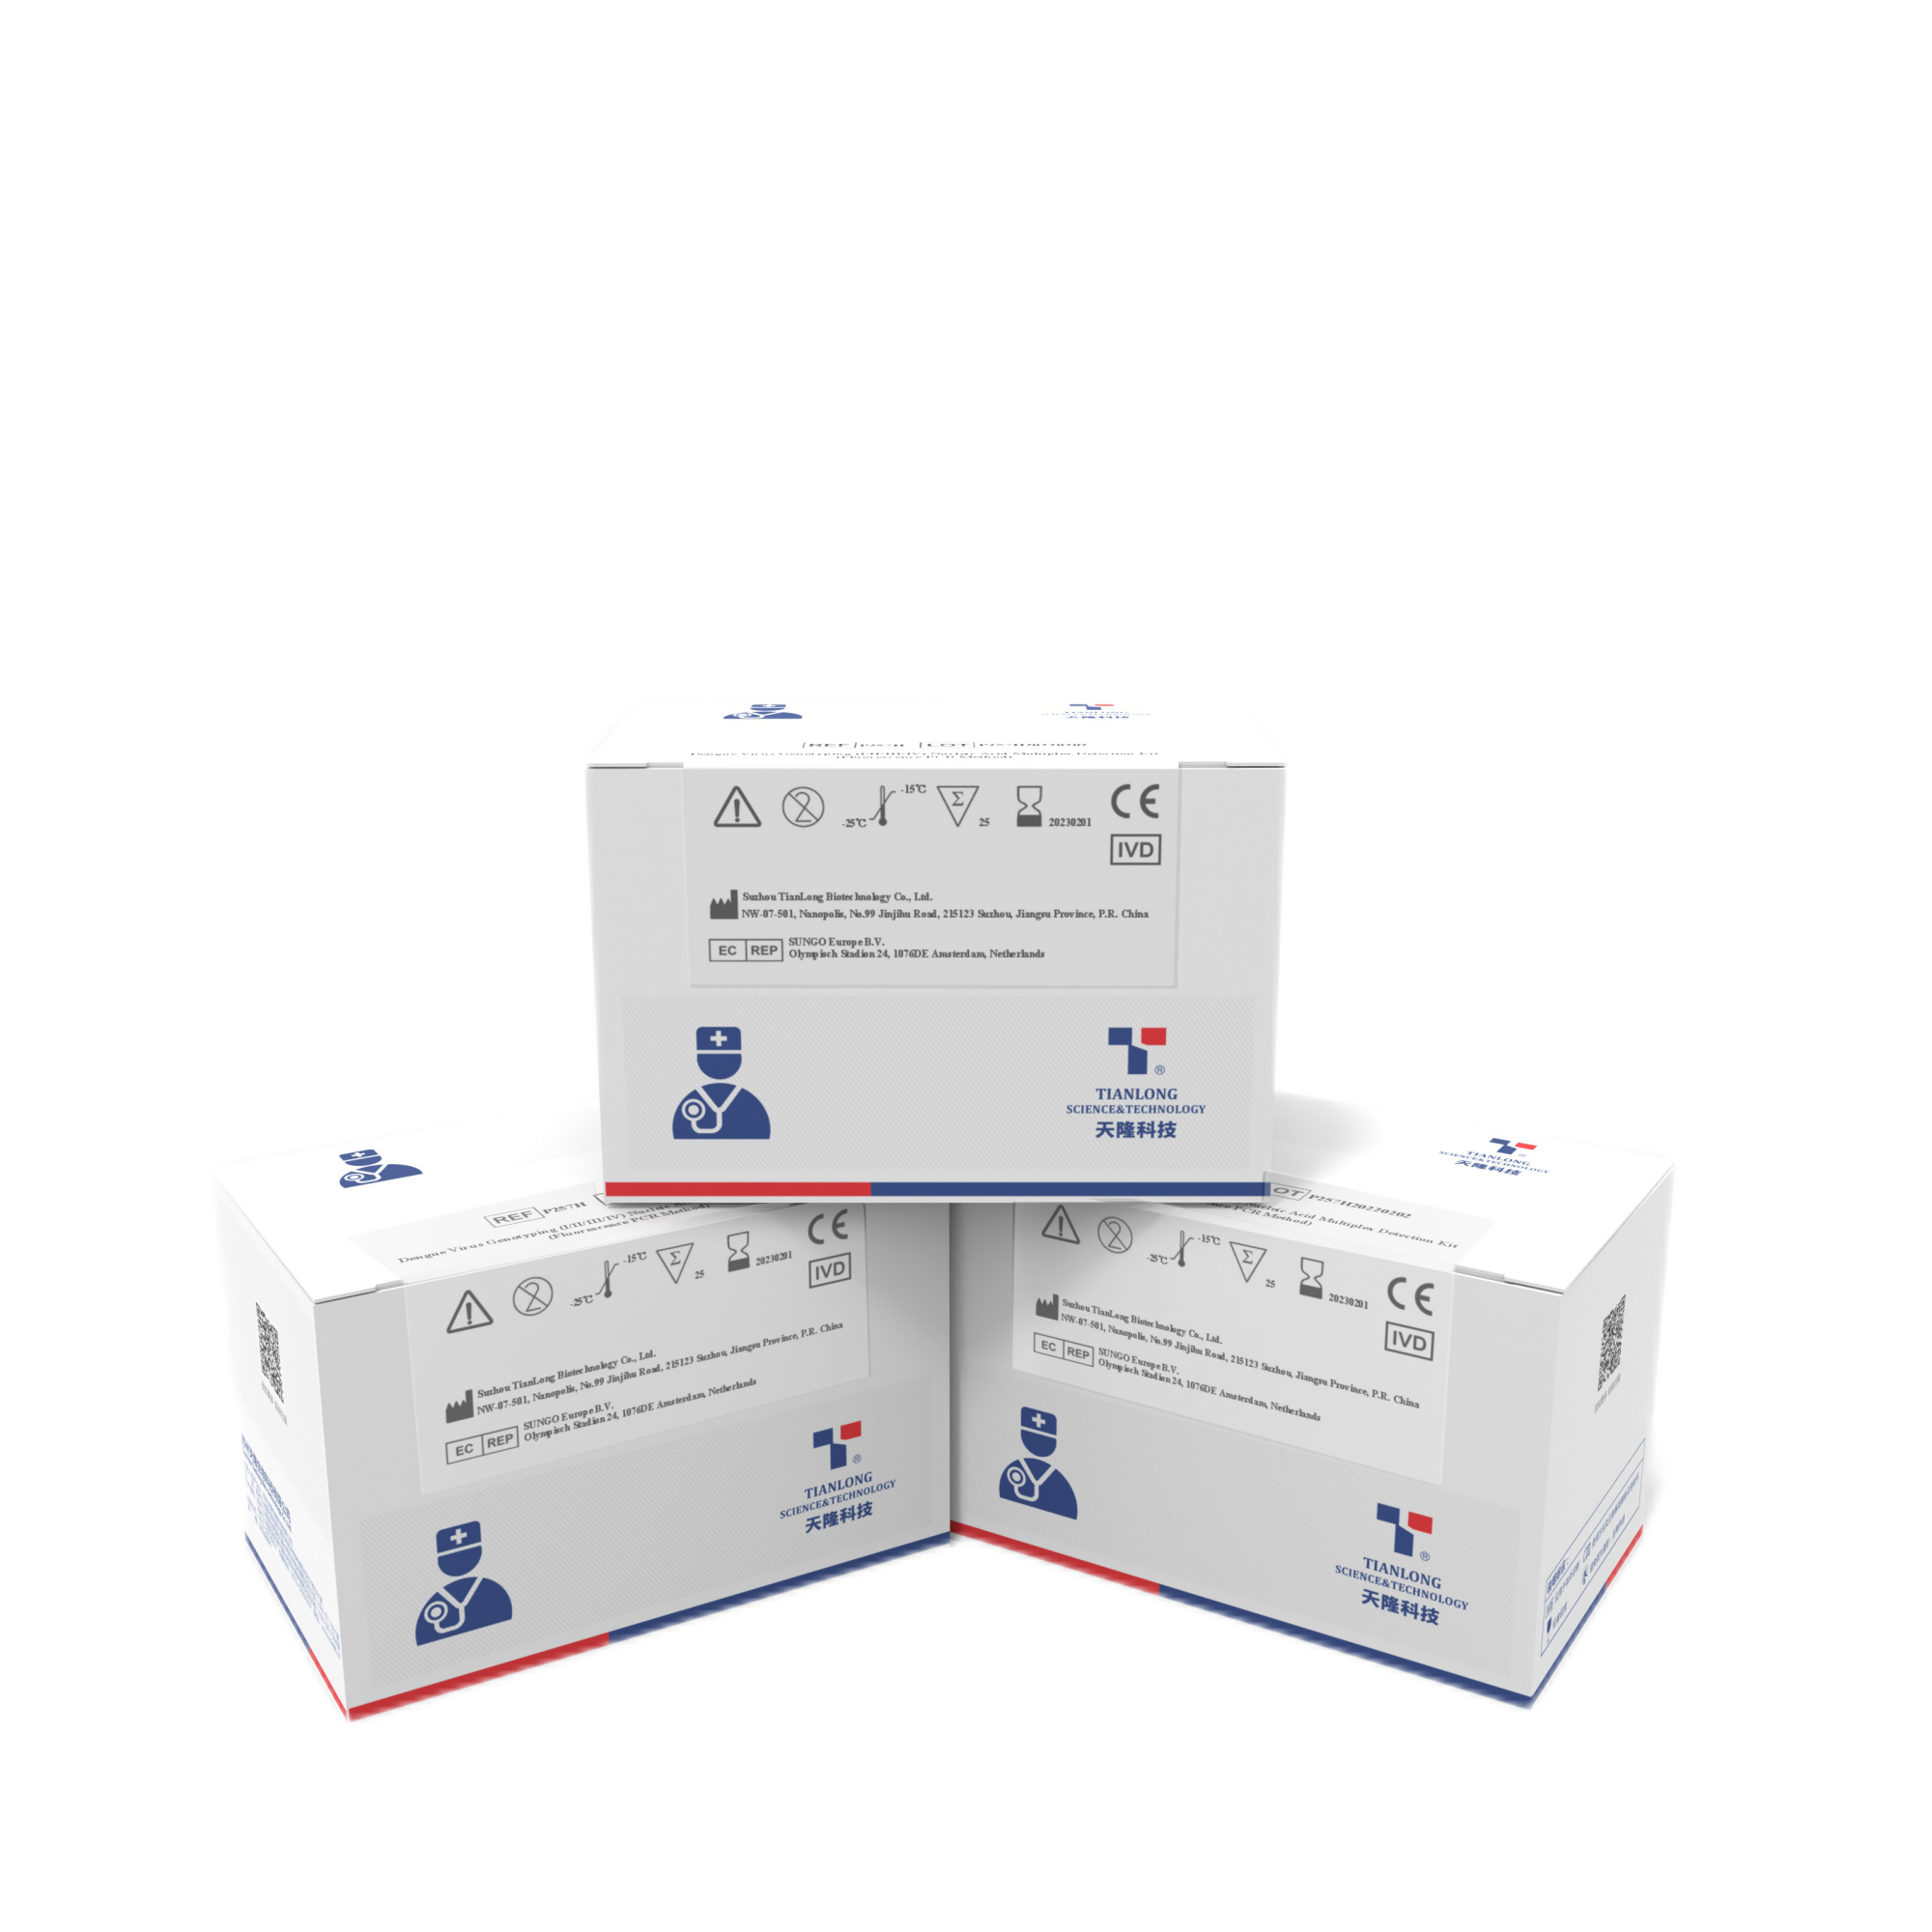 Comprar P257H- Kit de detección multiplex de ácido nucleico para genotipado del virus del dengue, P257H- Kit de detección multiplex de ácido nucleico para genotipado del virus del dengue Precios, P257H- Kit de detección multiplex de ácido nucleico para genotipado del virus del dengue Marcas, P257H- Kit de detección multiplex de ácido nucleico para genotipado del virus del dengue Fabricante, P257H- Kit de detección multiplex de ácido nucleico para genotipado del virus del dengue Citas, P257H- Kit de detección multiplex de ácido nucleico para genotipado del virus del dengue Empresa.